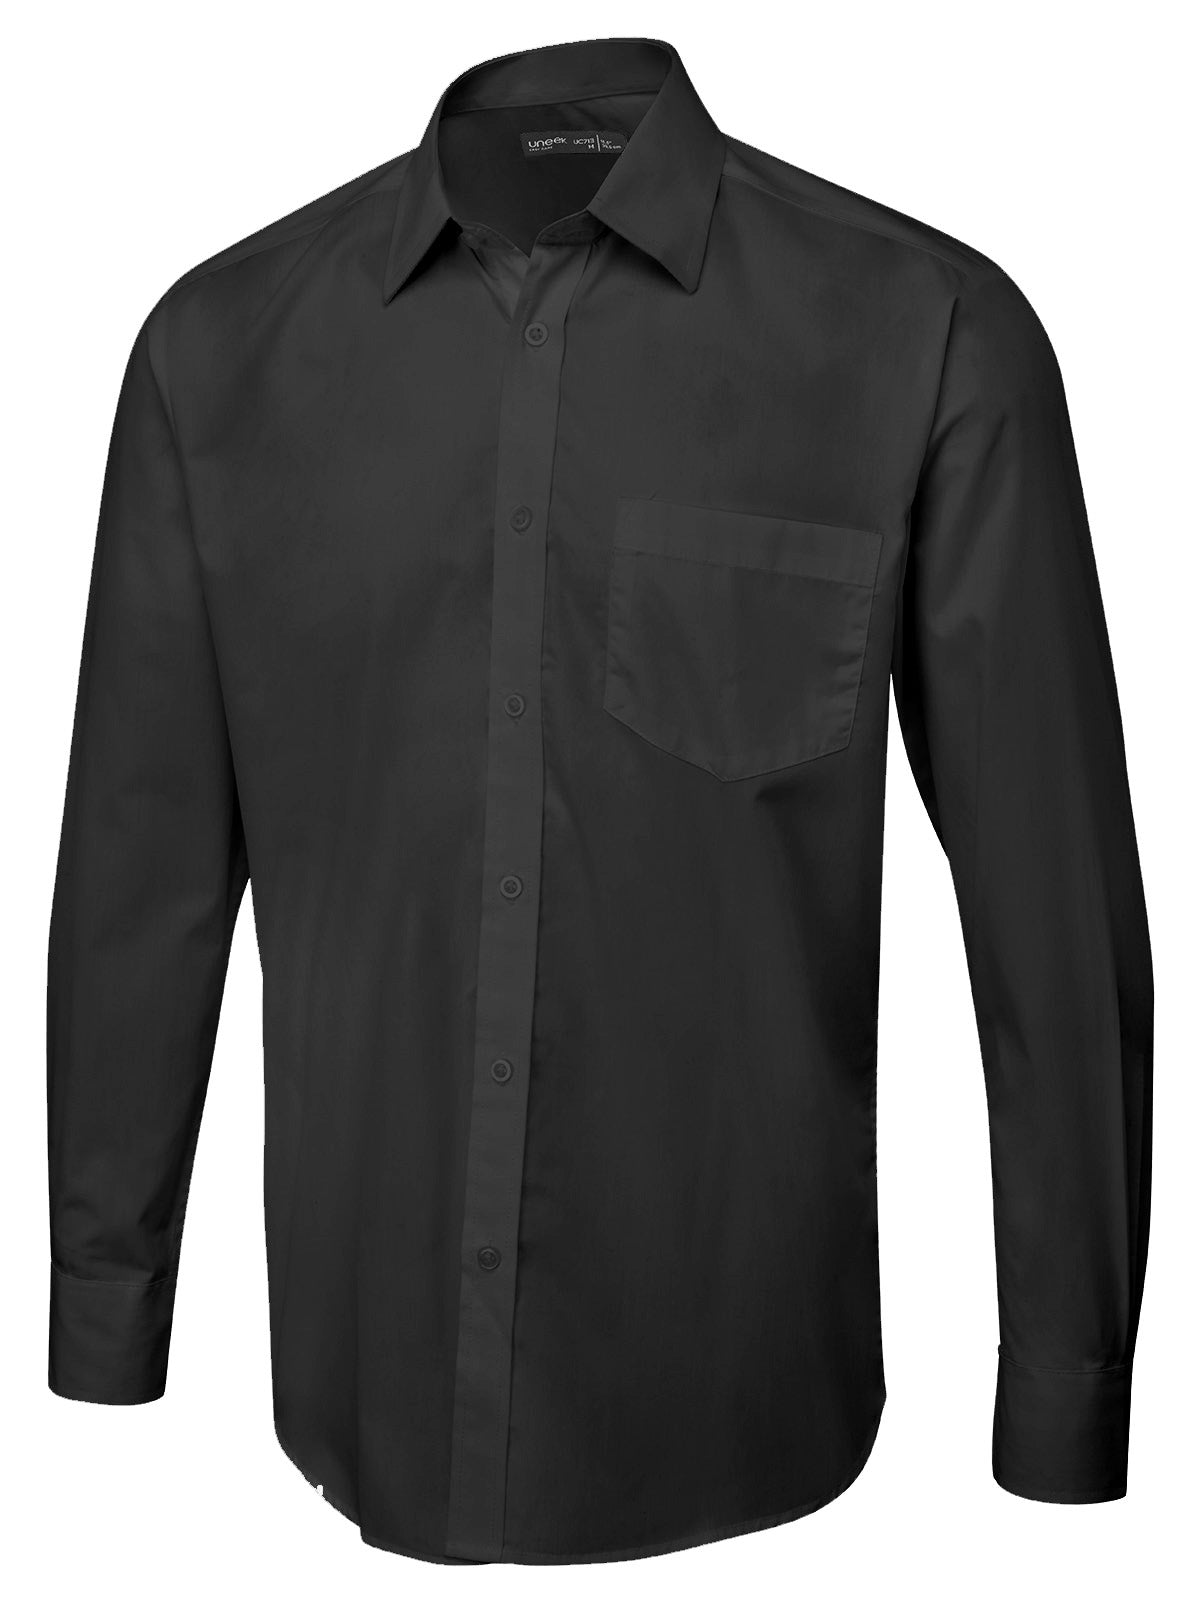 Uneek Men's Long Sleeve Poplin Shirt UC713 - Black